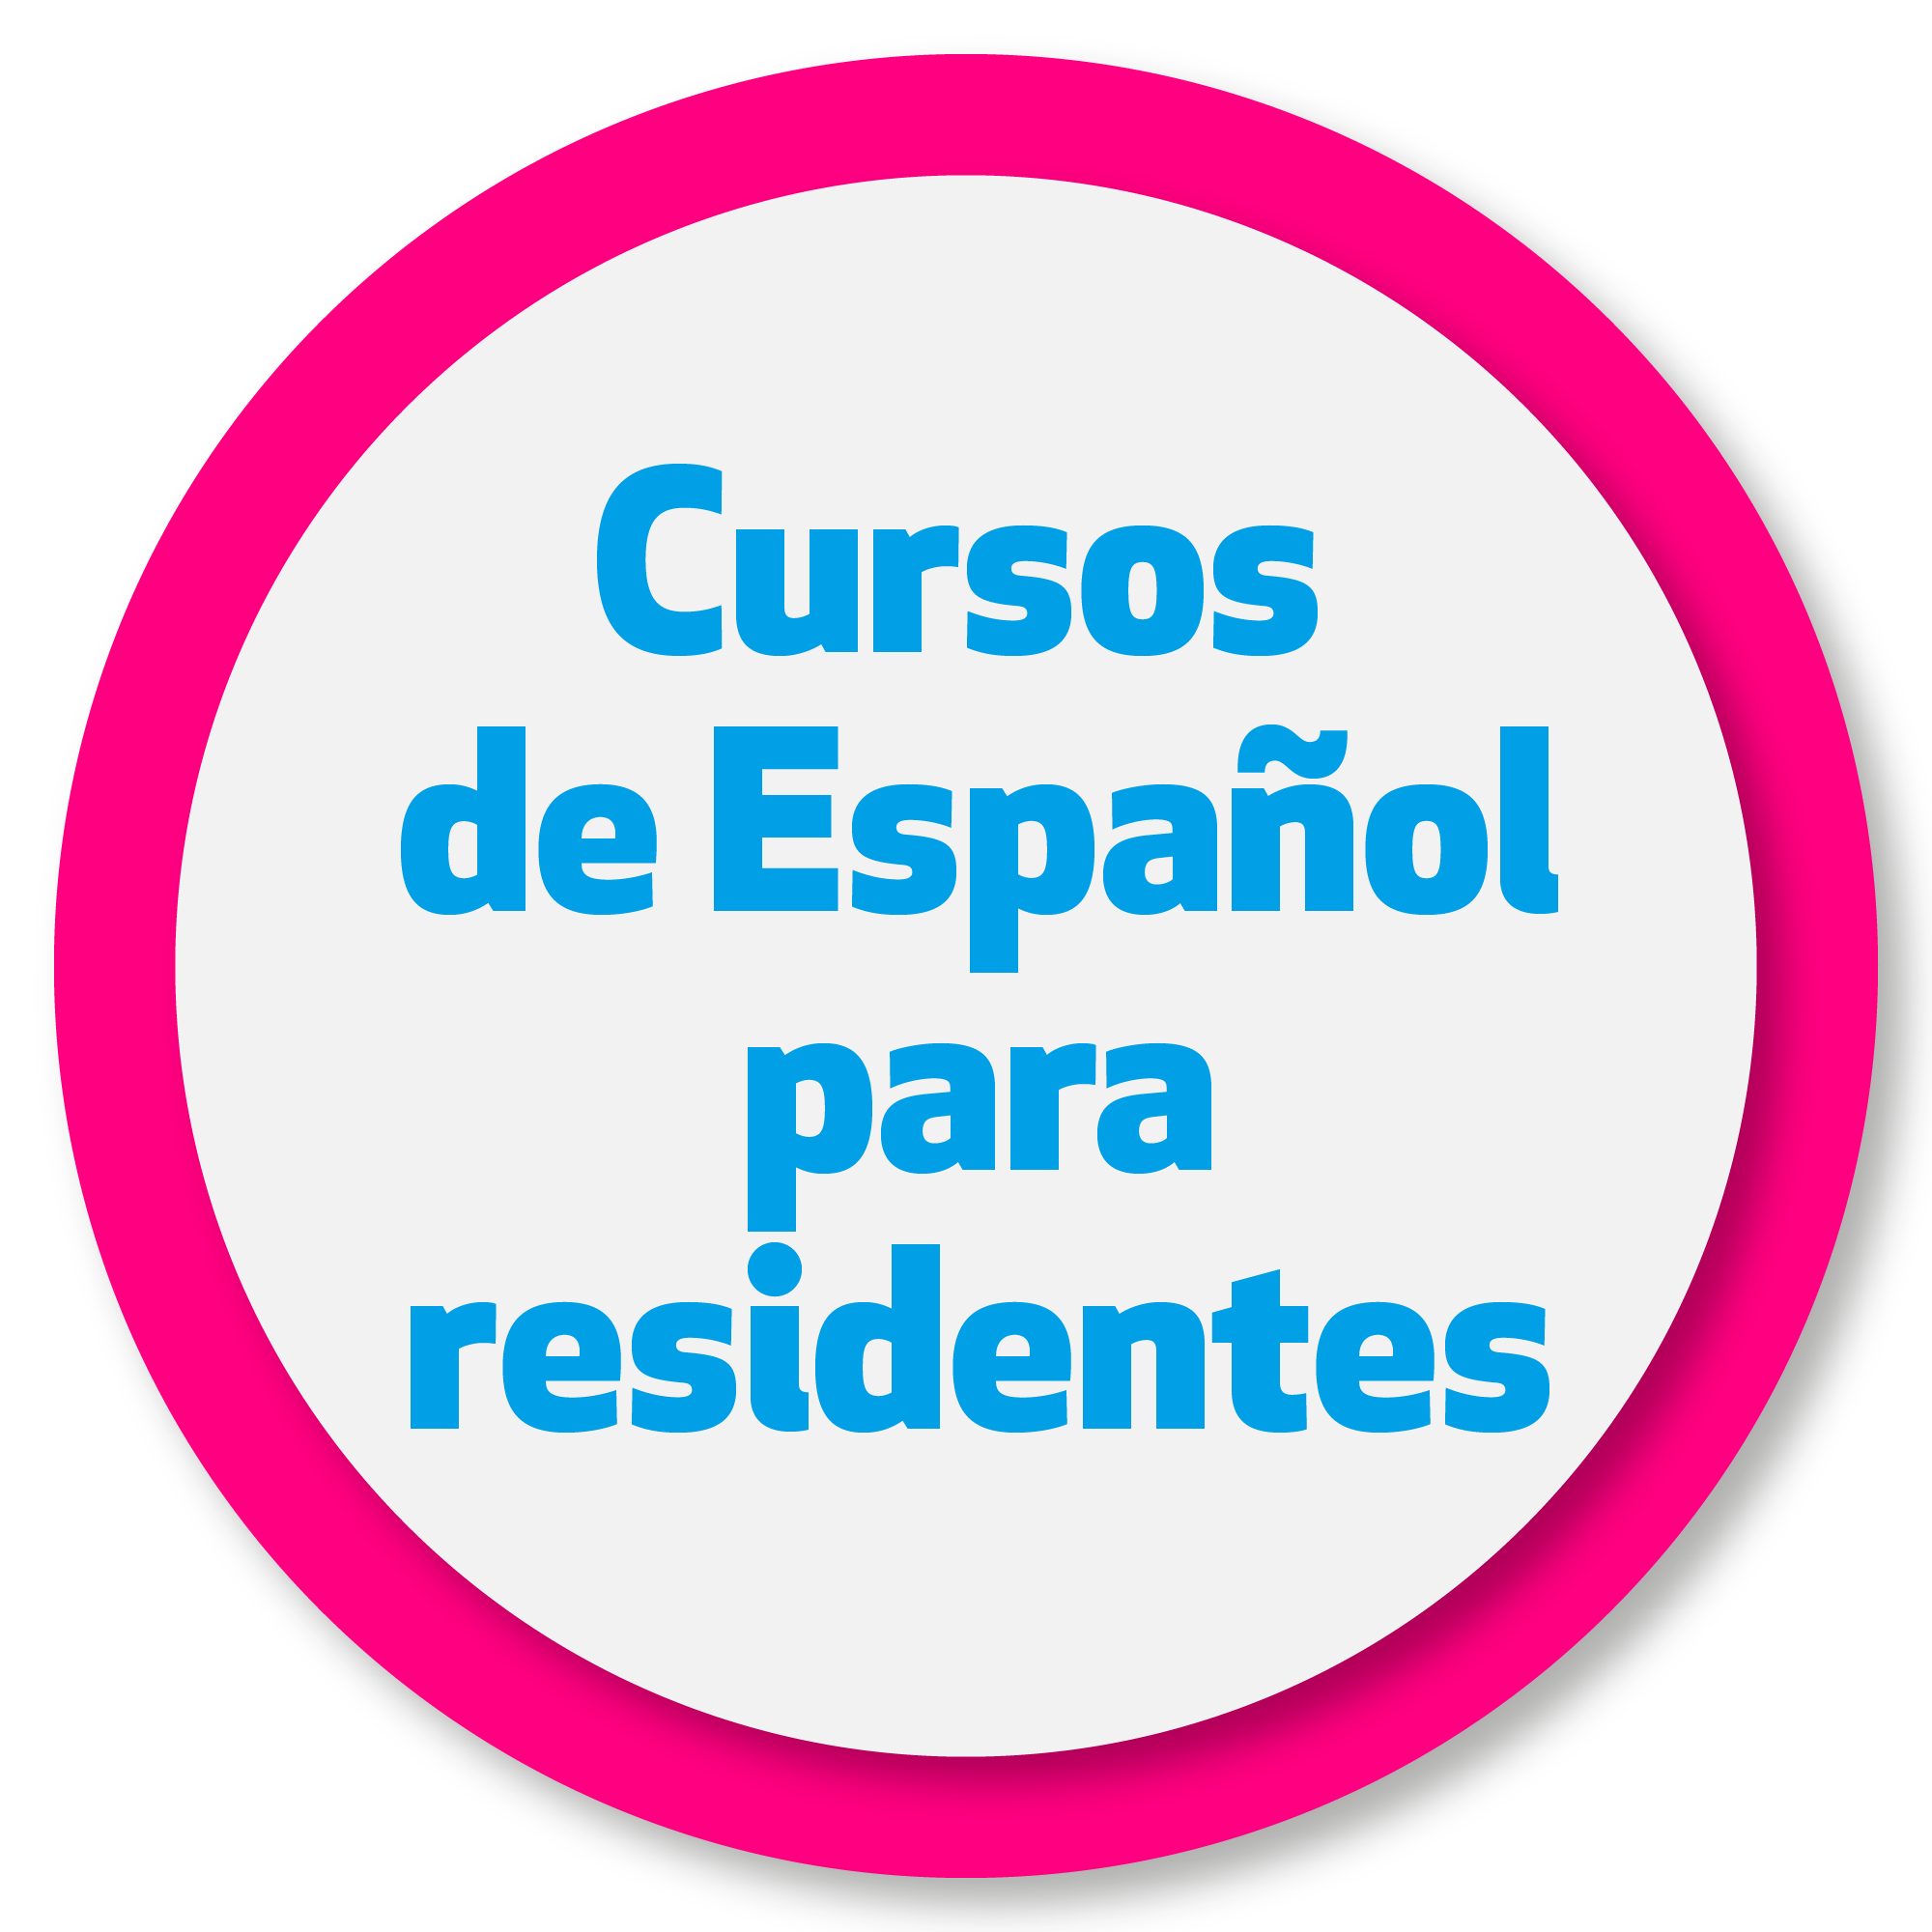 Cursos de español para residentes en Sevilla